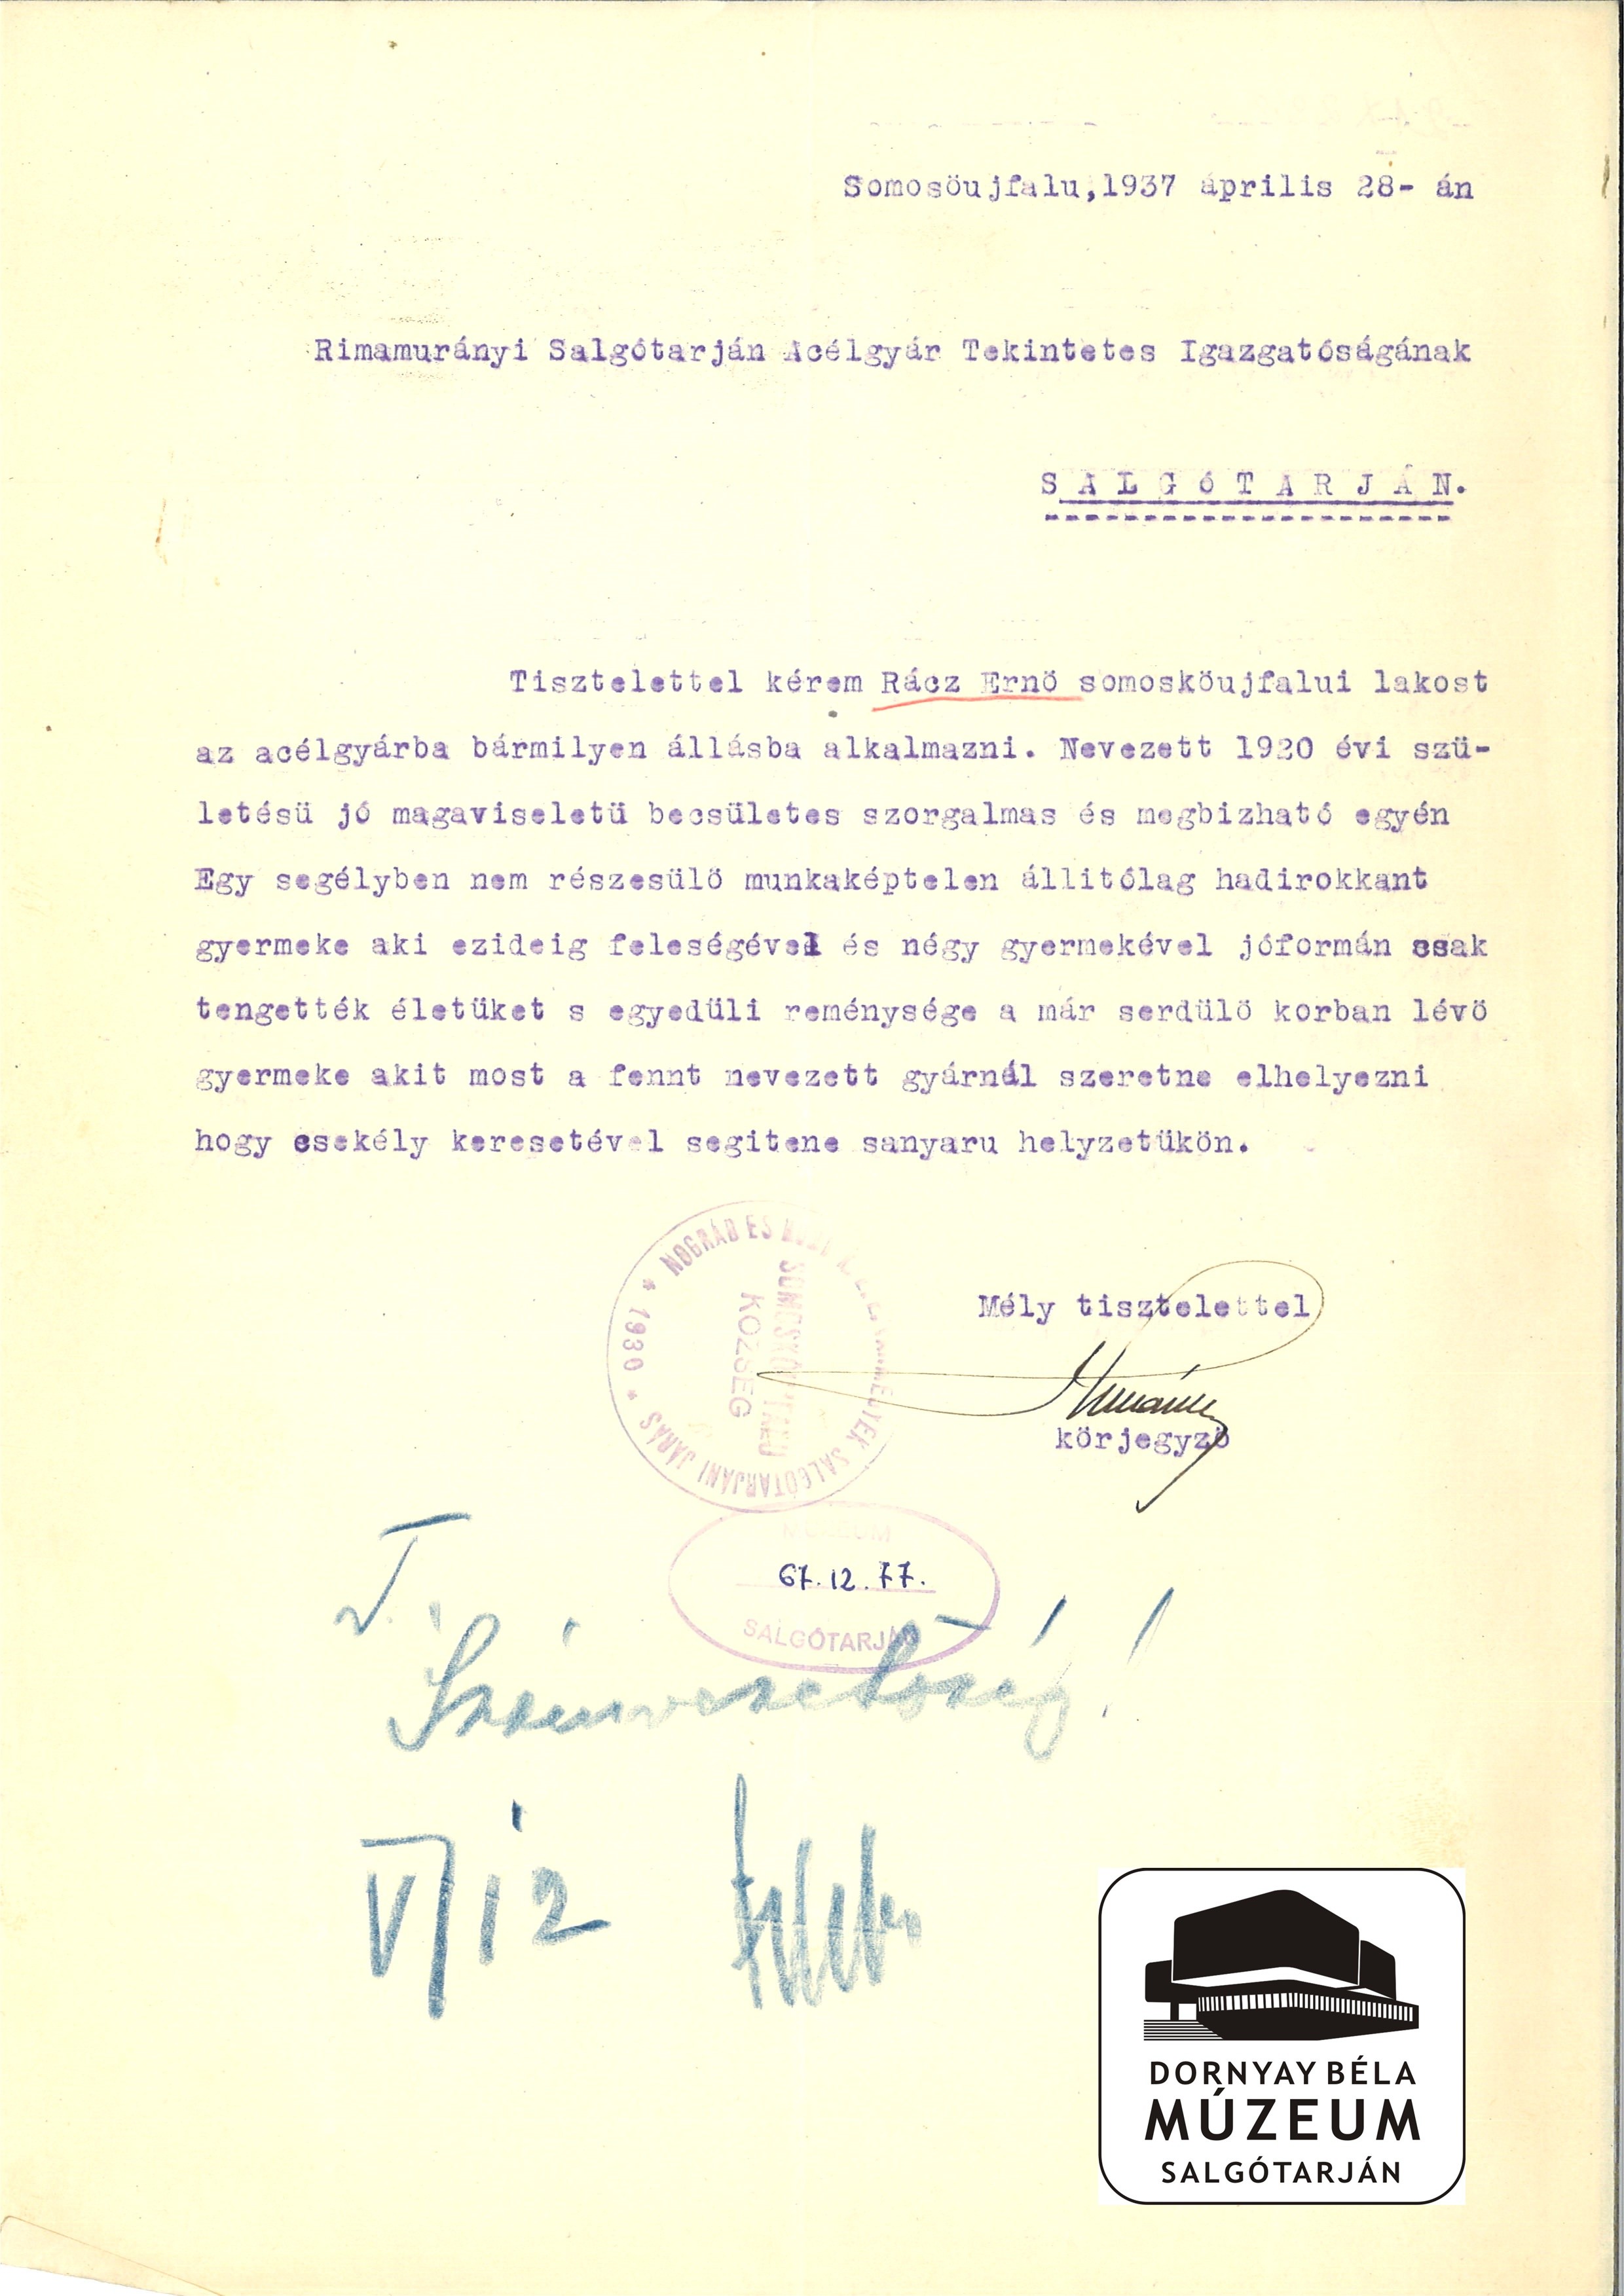 Rácz Ernő somoskőújfalui lakos acélgyári alkalmazását kéri. Körjegyzői fogalmazás (Dornyay Béla Múzeum, Salgótarján CC BY-NC-SA)